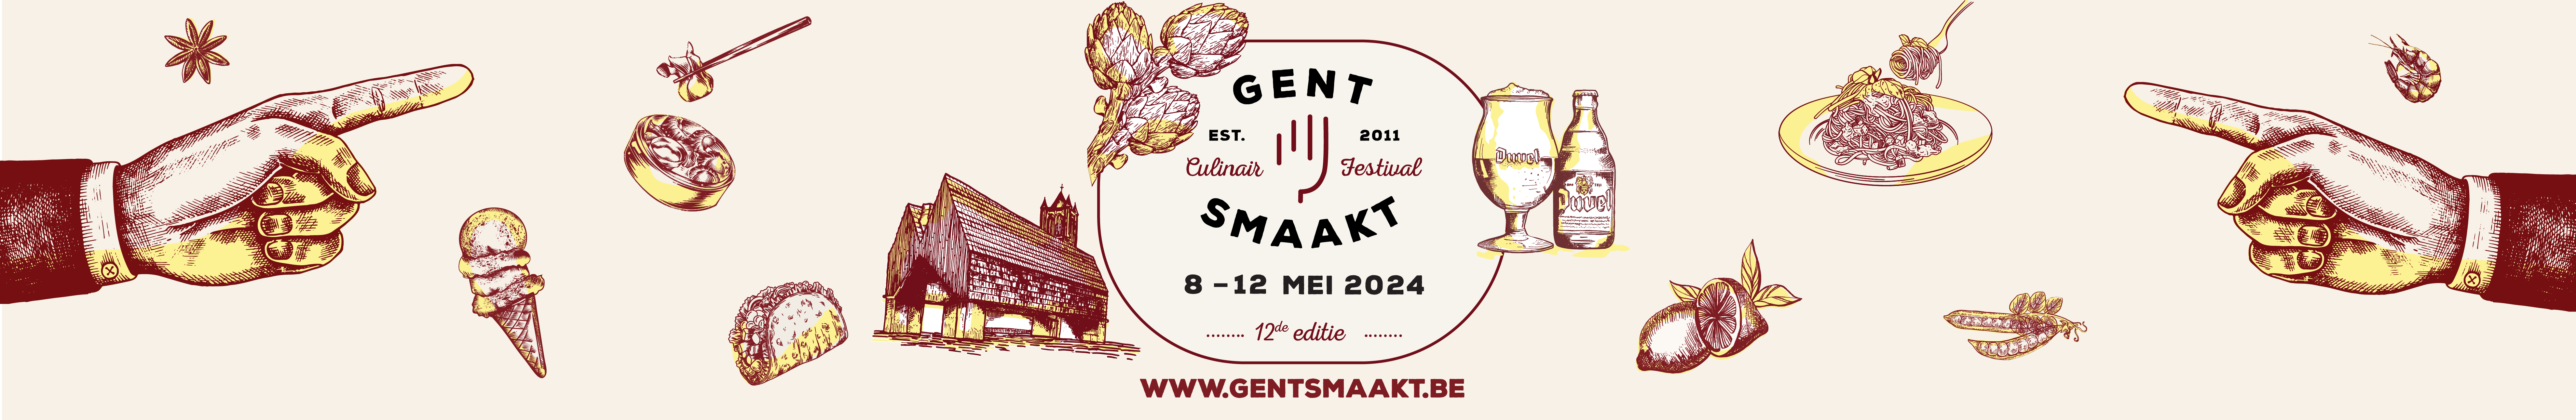 Win foodbonnen voor het culinaire festival 'Gent Smaakt'